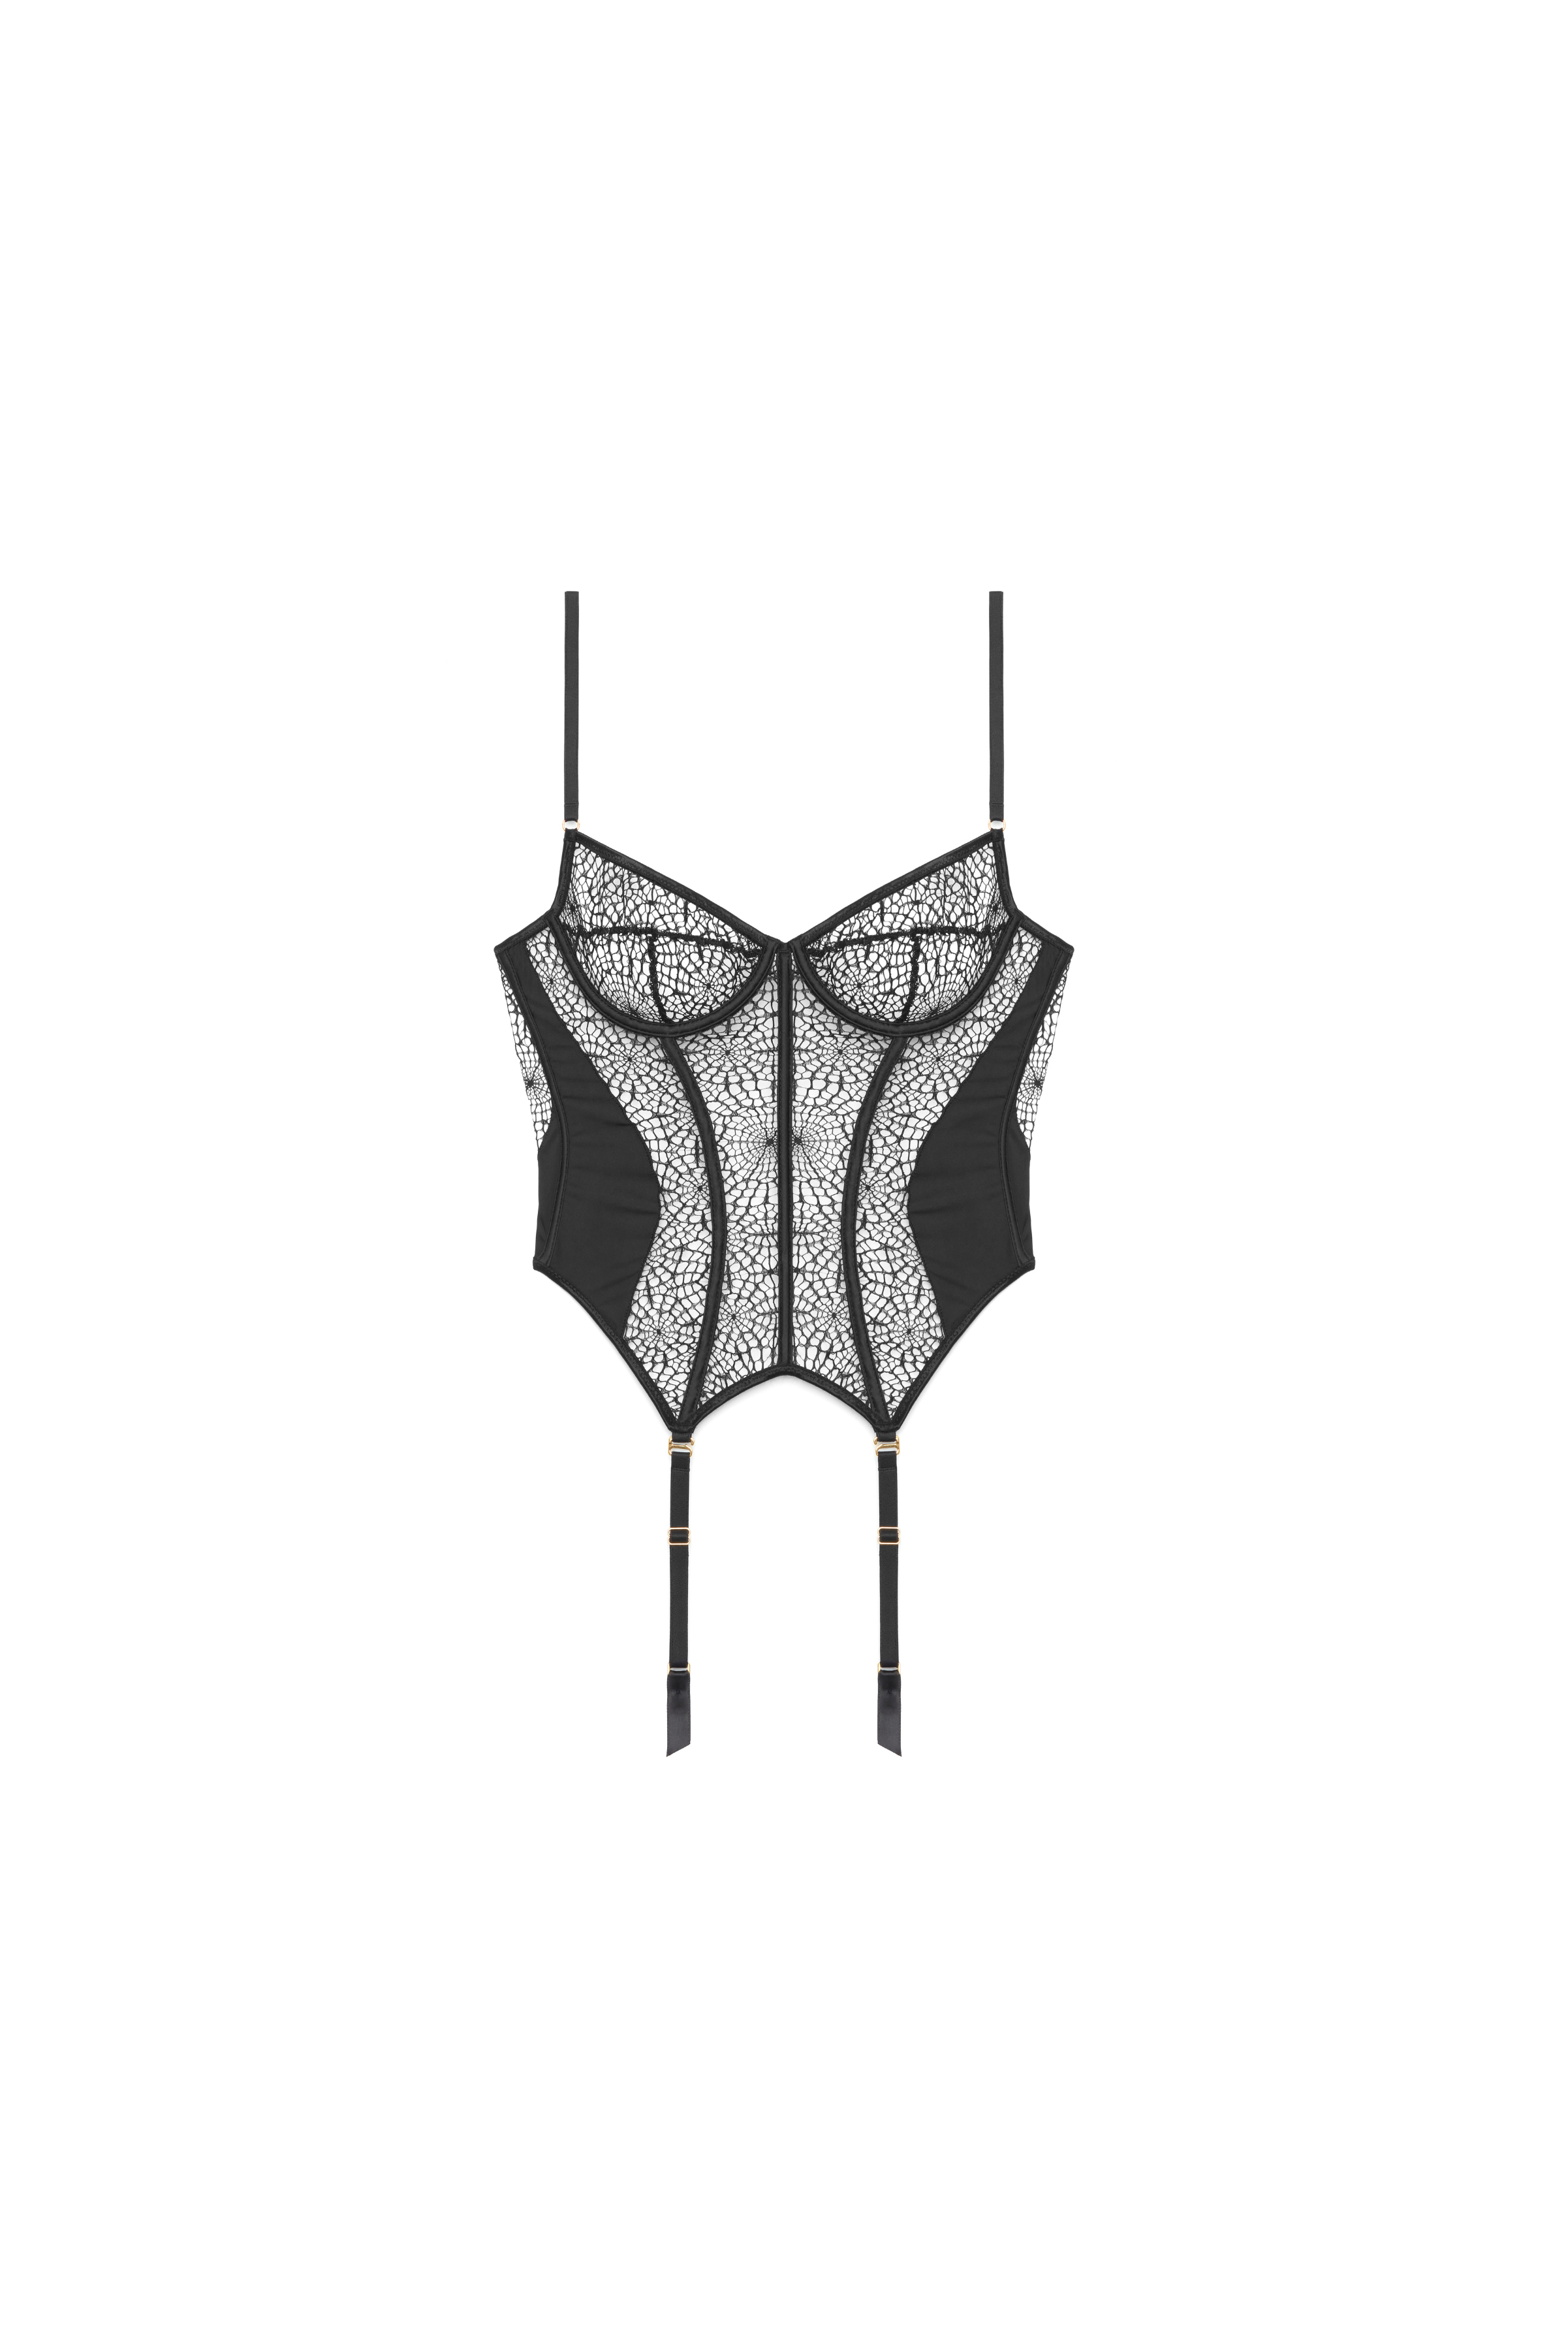 Il corsetto di Margot